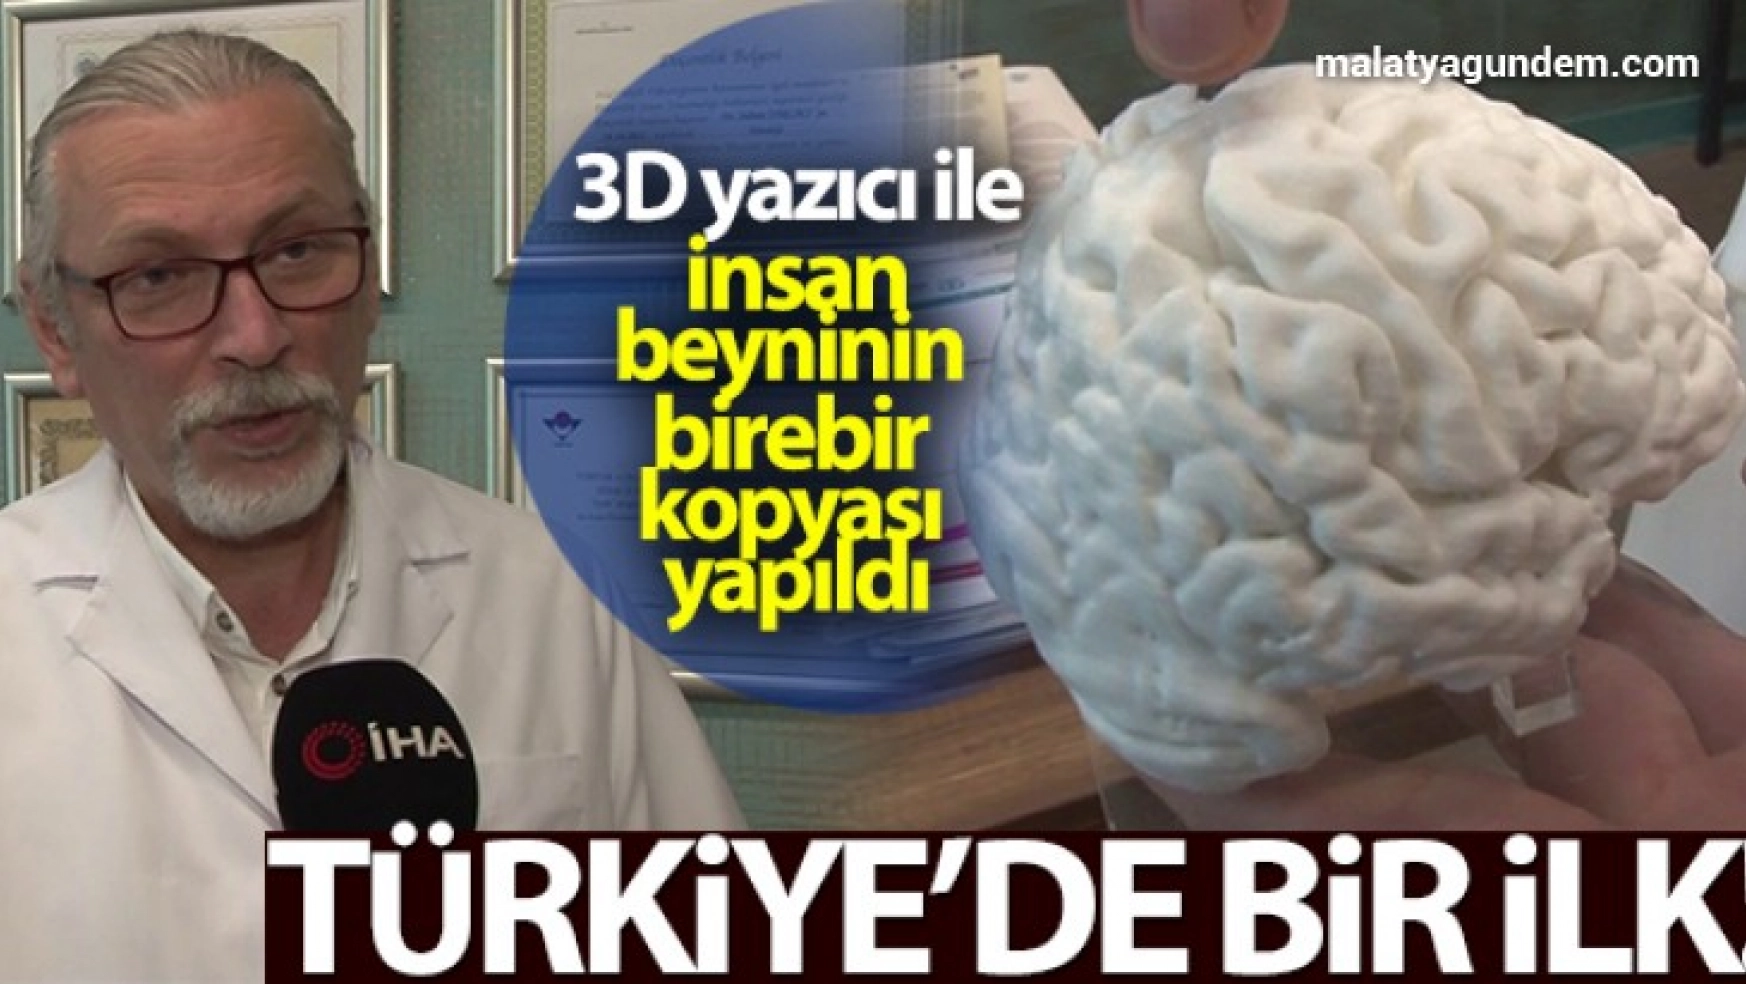 3D yazıcı ile insan beyninin birebir kopyası yapıldı